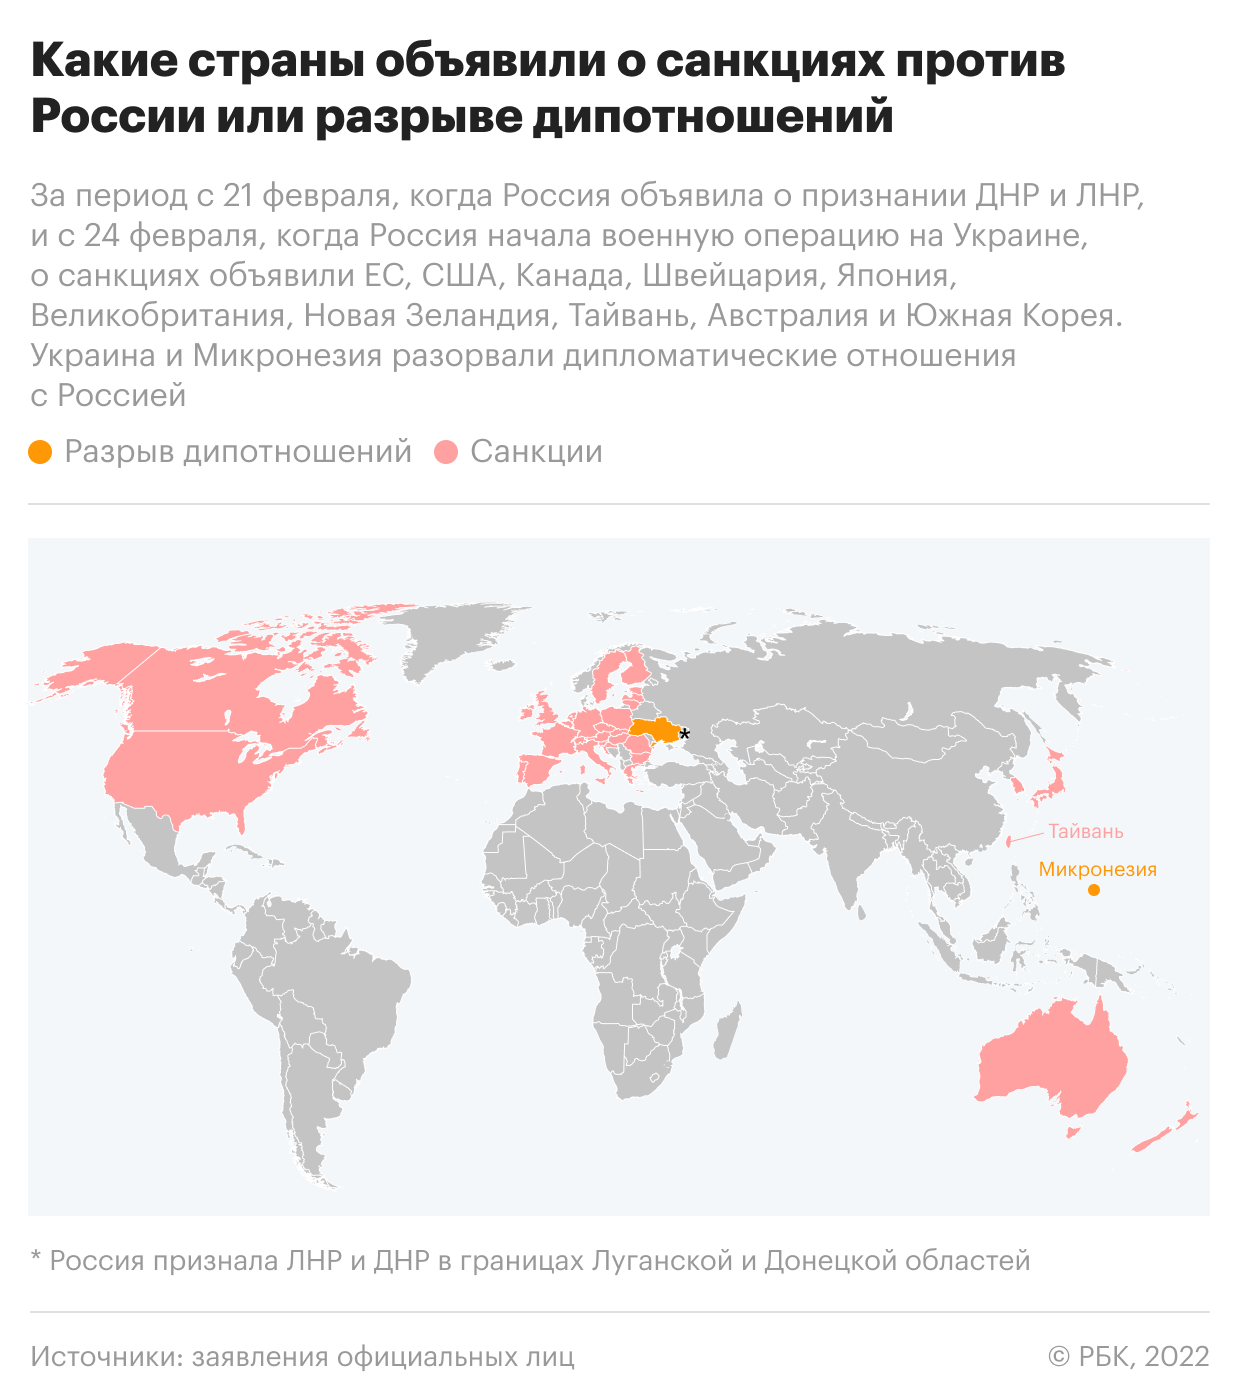 Какие страны объявили о санкциях и разрыве дипотношений с Россией. Карта"/>













